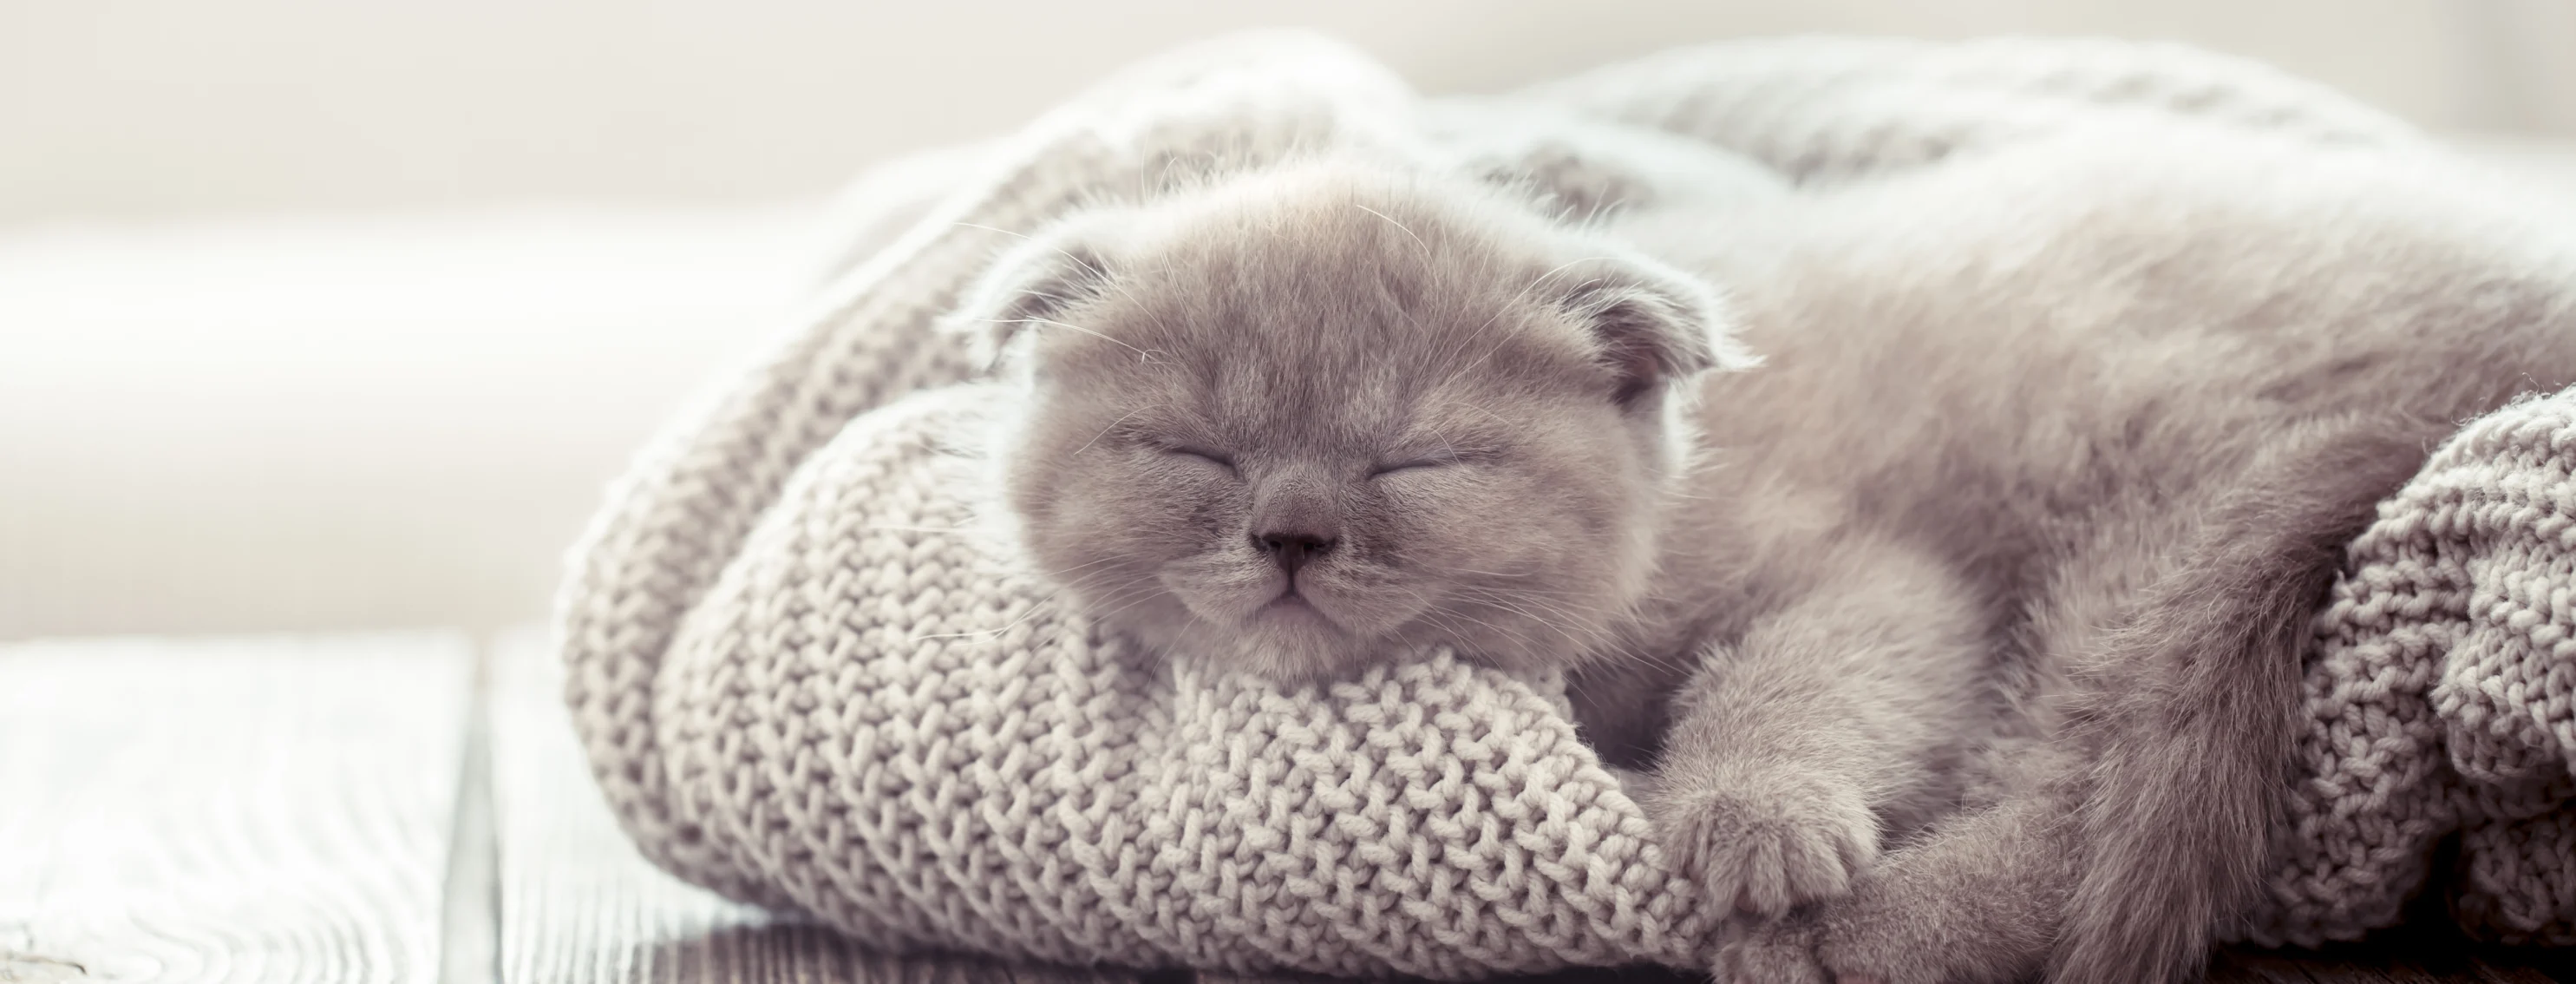 Kitten asleep on a sweater